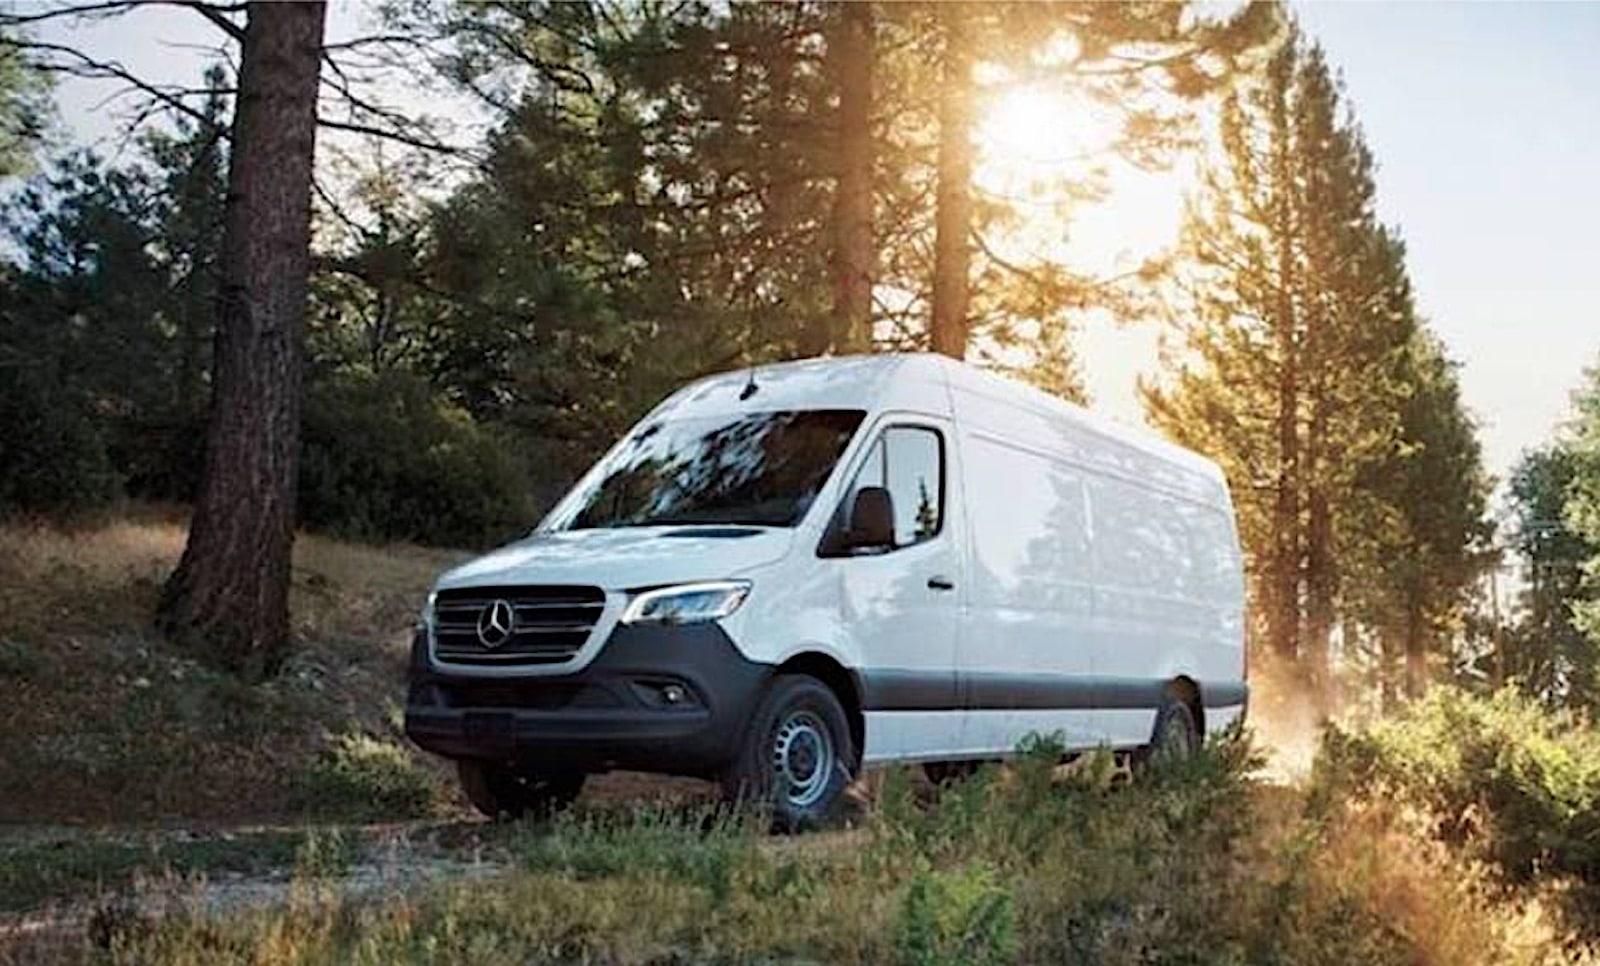 Mercedes Benz Offers New Diesel In Cargo Van The Detroit Bureau